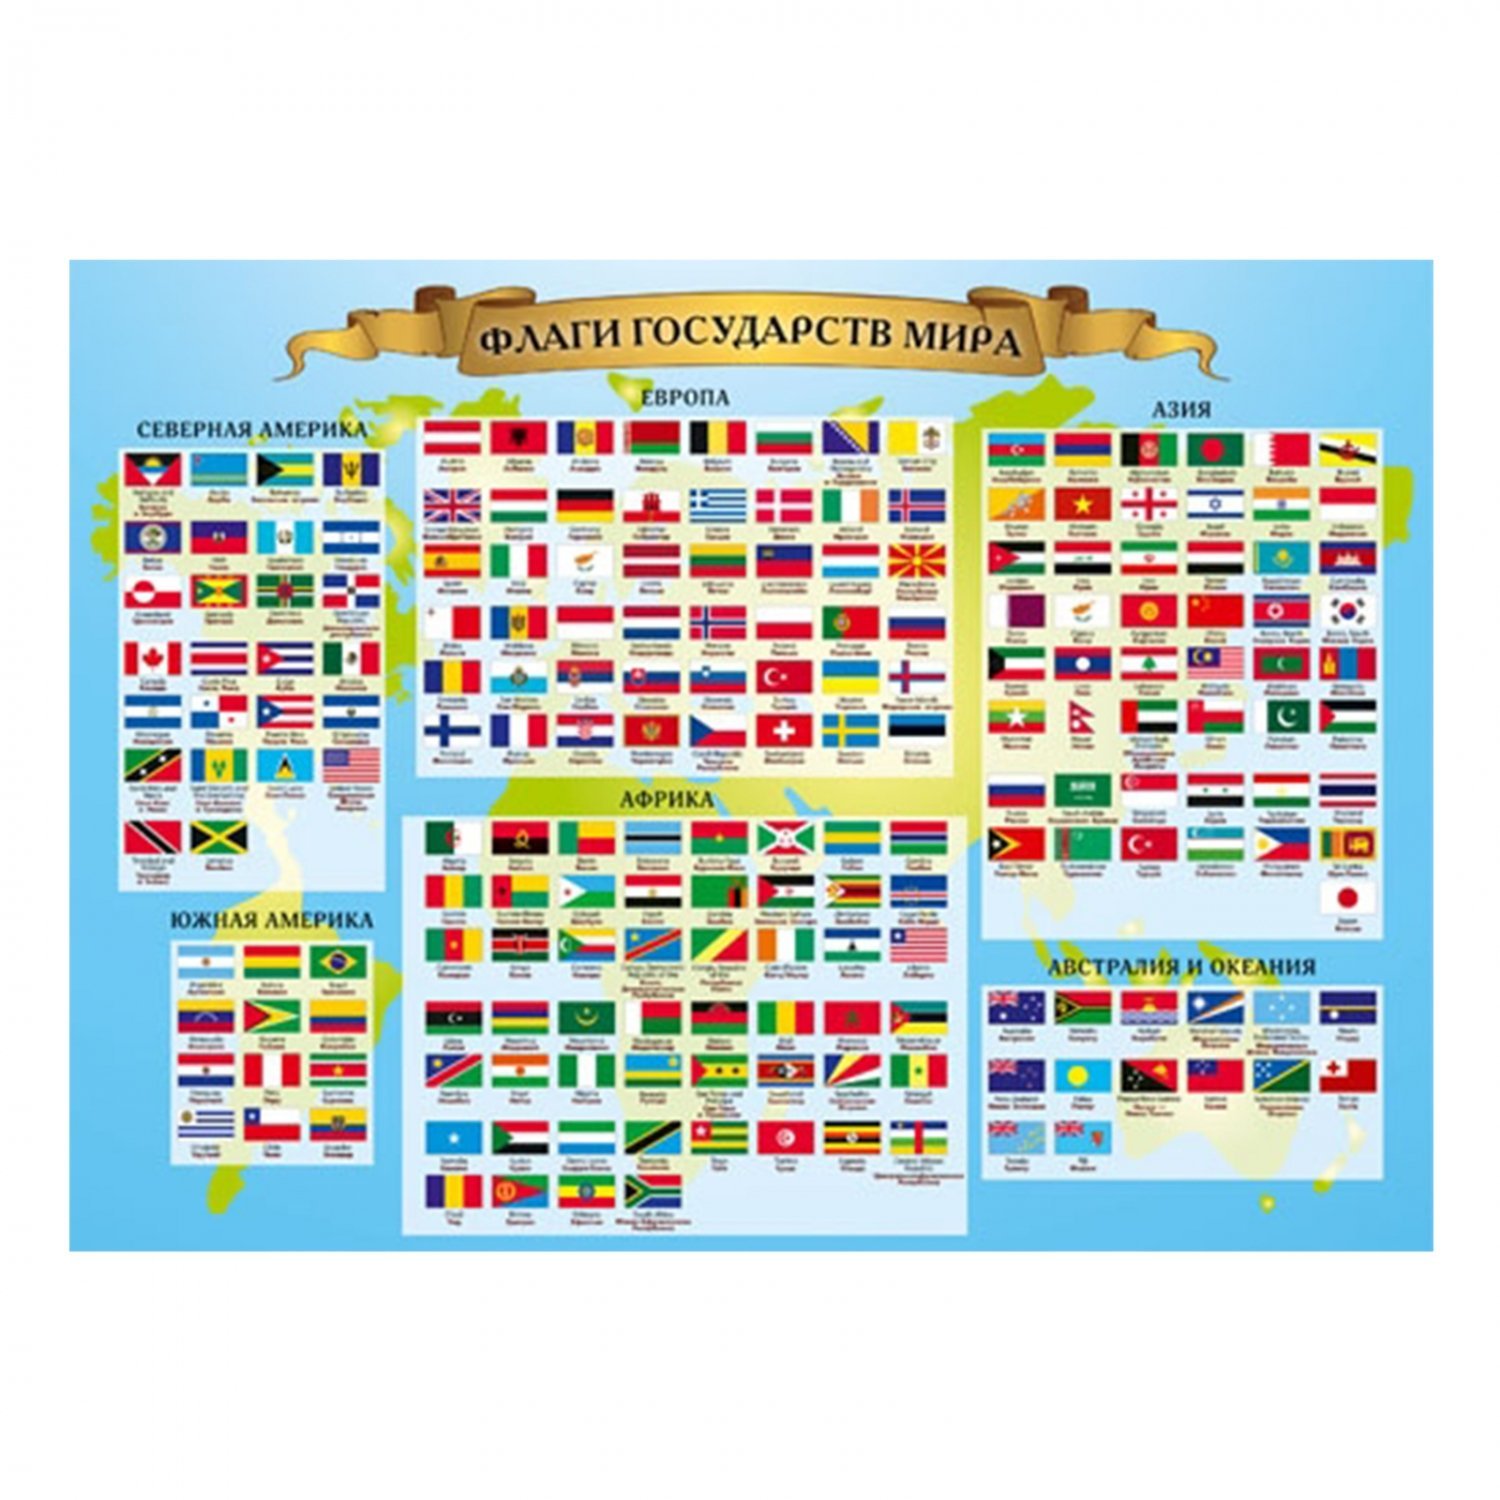 Флаги государств мира с названиями фото на русском языке бесплатно